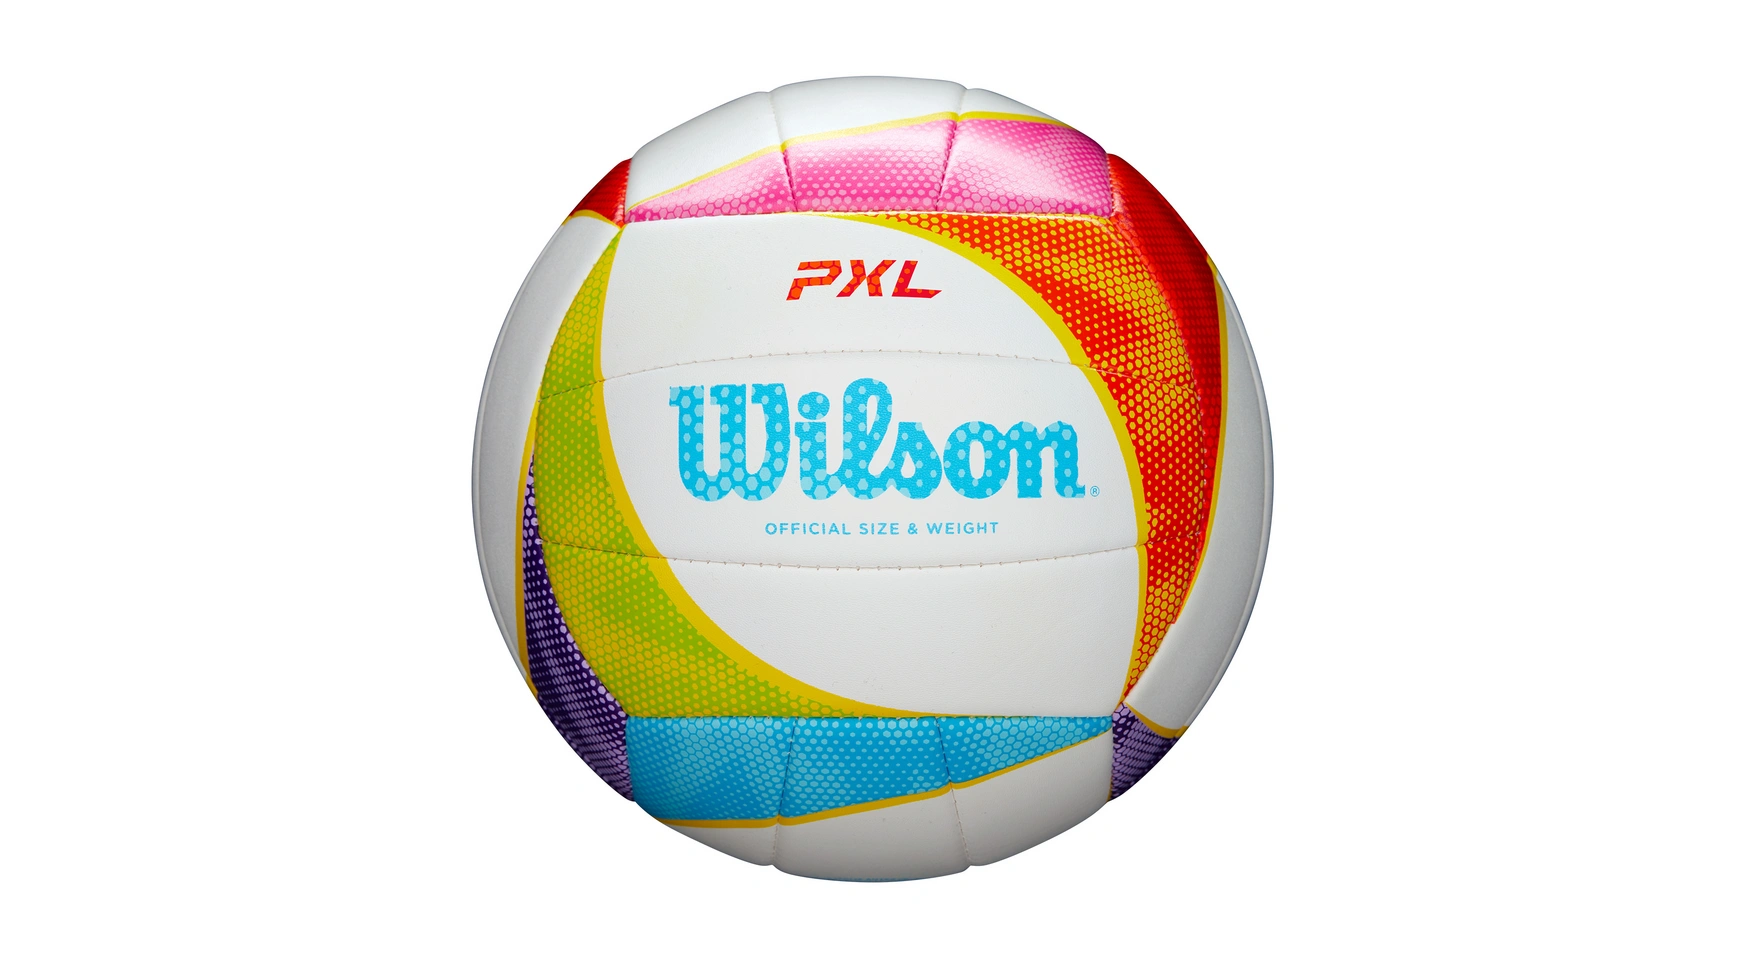 Мяч Wilson волейбольный PXL, размер 5 высококачественный мяч для волейбола стандартный размер 5 мяч из пу для студентов взрослых и подростков тренировочный мяч для соревнован